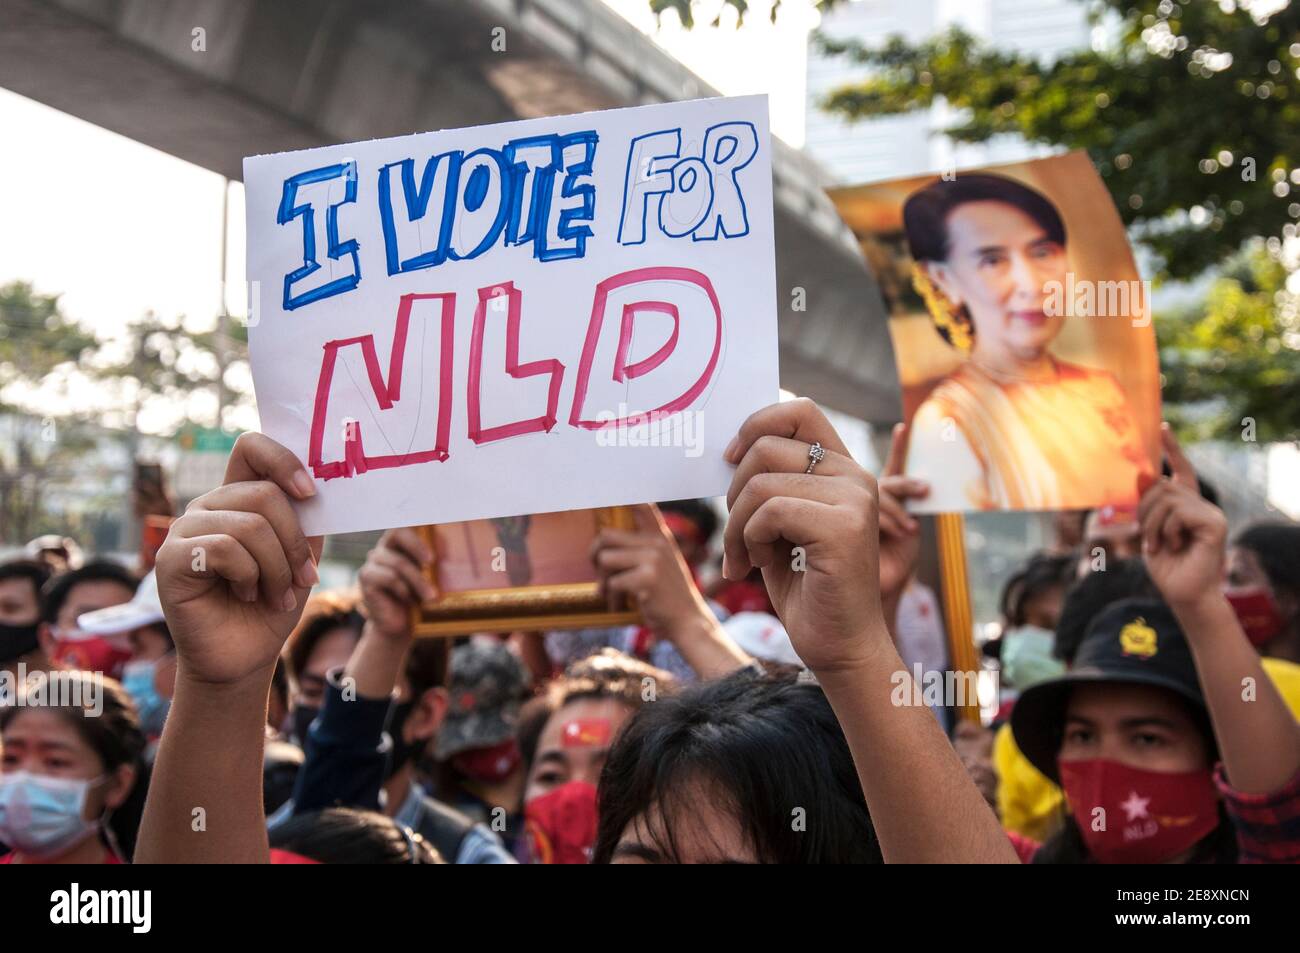 Il sostenitore della NLD tiene un cartello con la scritta "Voto for NLD" durante la manifestazione. I sostenitori della Lega nazionale per la democrazia (NLD) e i manifestanti anti-colpo thailandesi si radunano fuori dall'ambasciata del Myanmar dopo che l'esercito del Myanmar ha preso il potere da un governo civile democraticamente eletto e ha arrestato il suo leader Aung San Suu Kyi. La polizia tailandese in rivolta ha poi disperso i dimostranti. Foto Stock